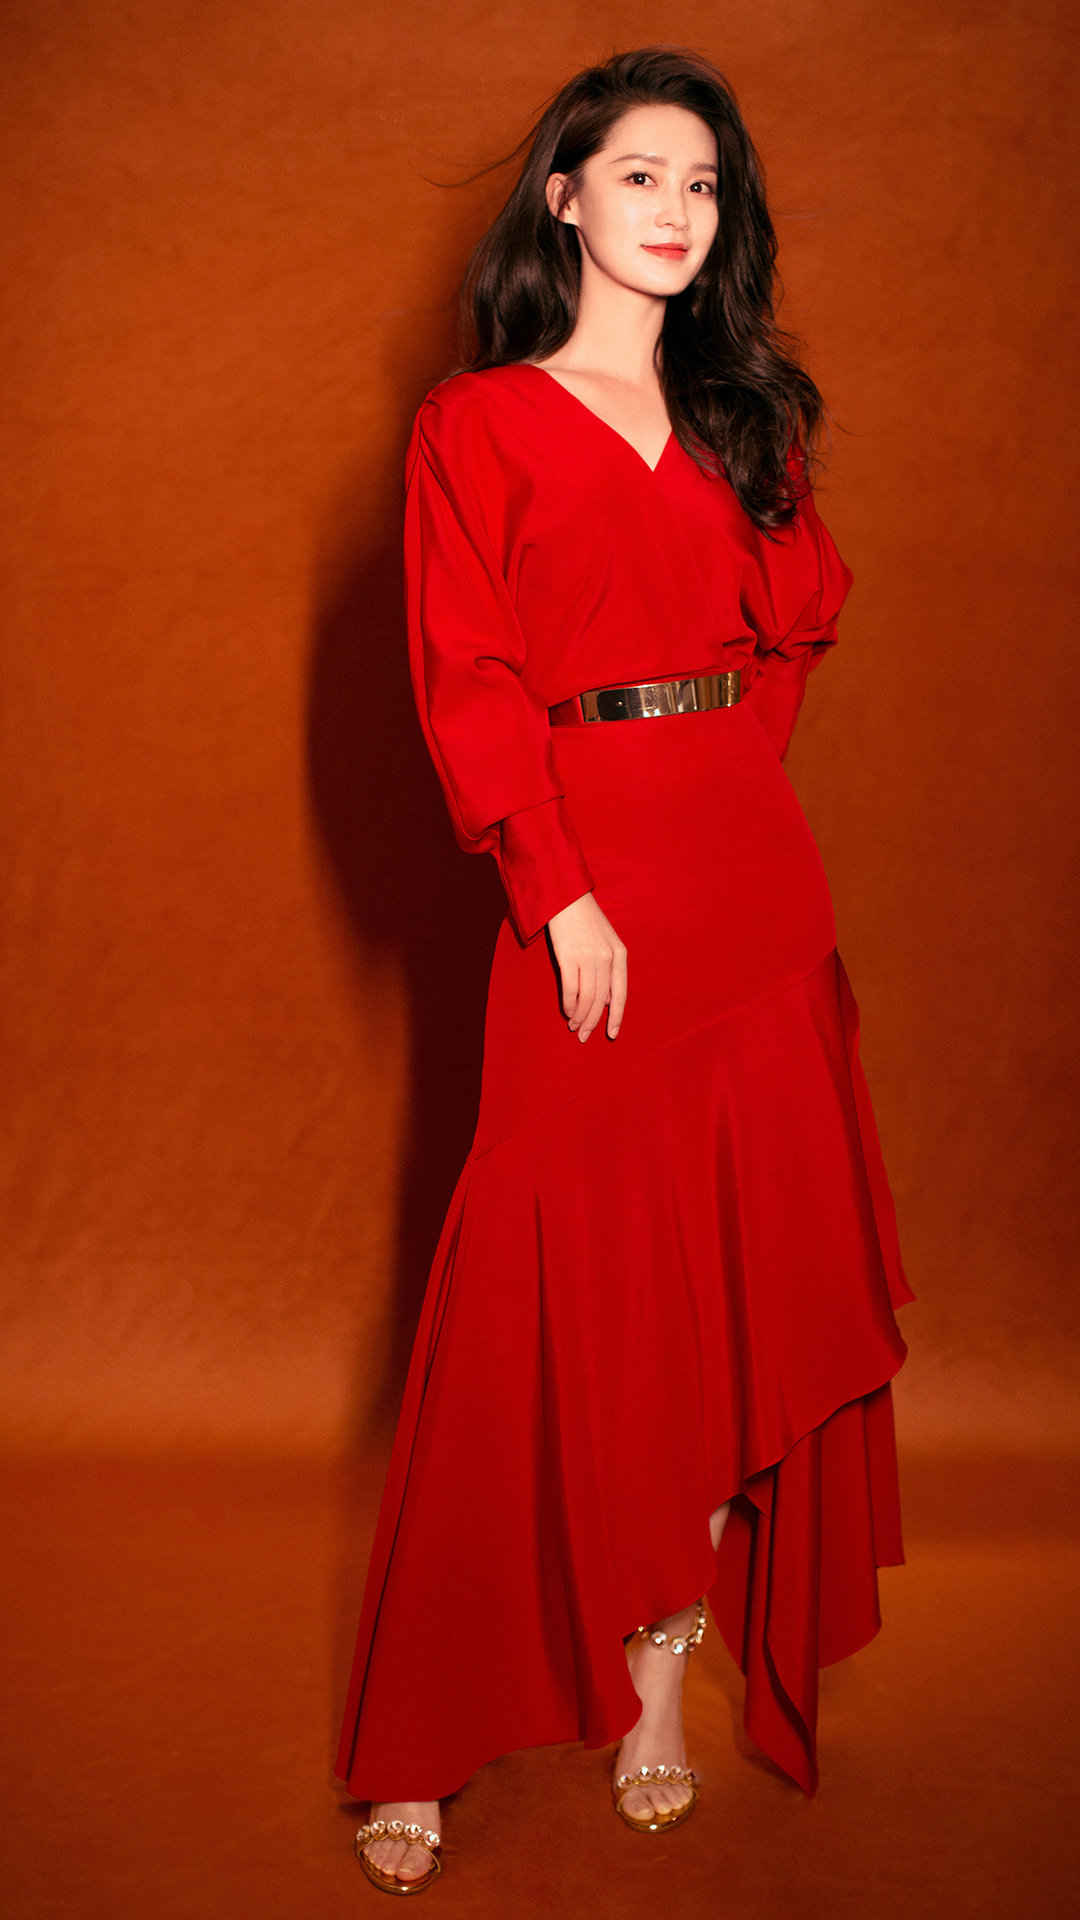 李沁红裙妩媚性感高清手机壁纸